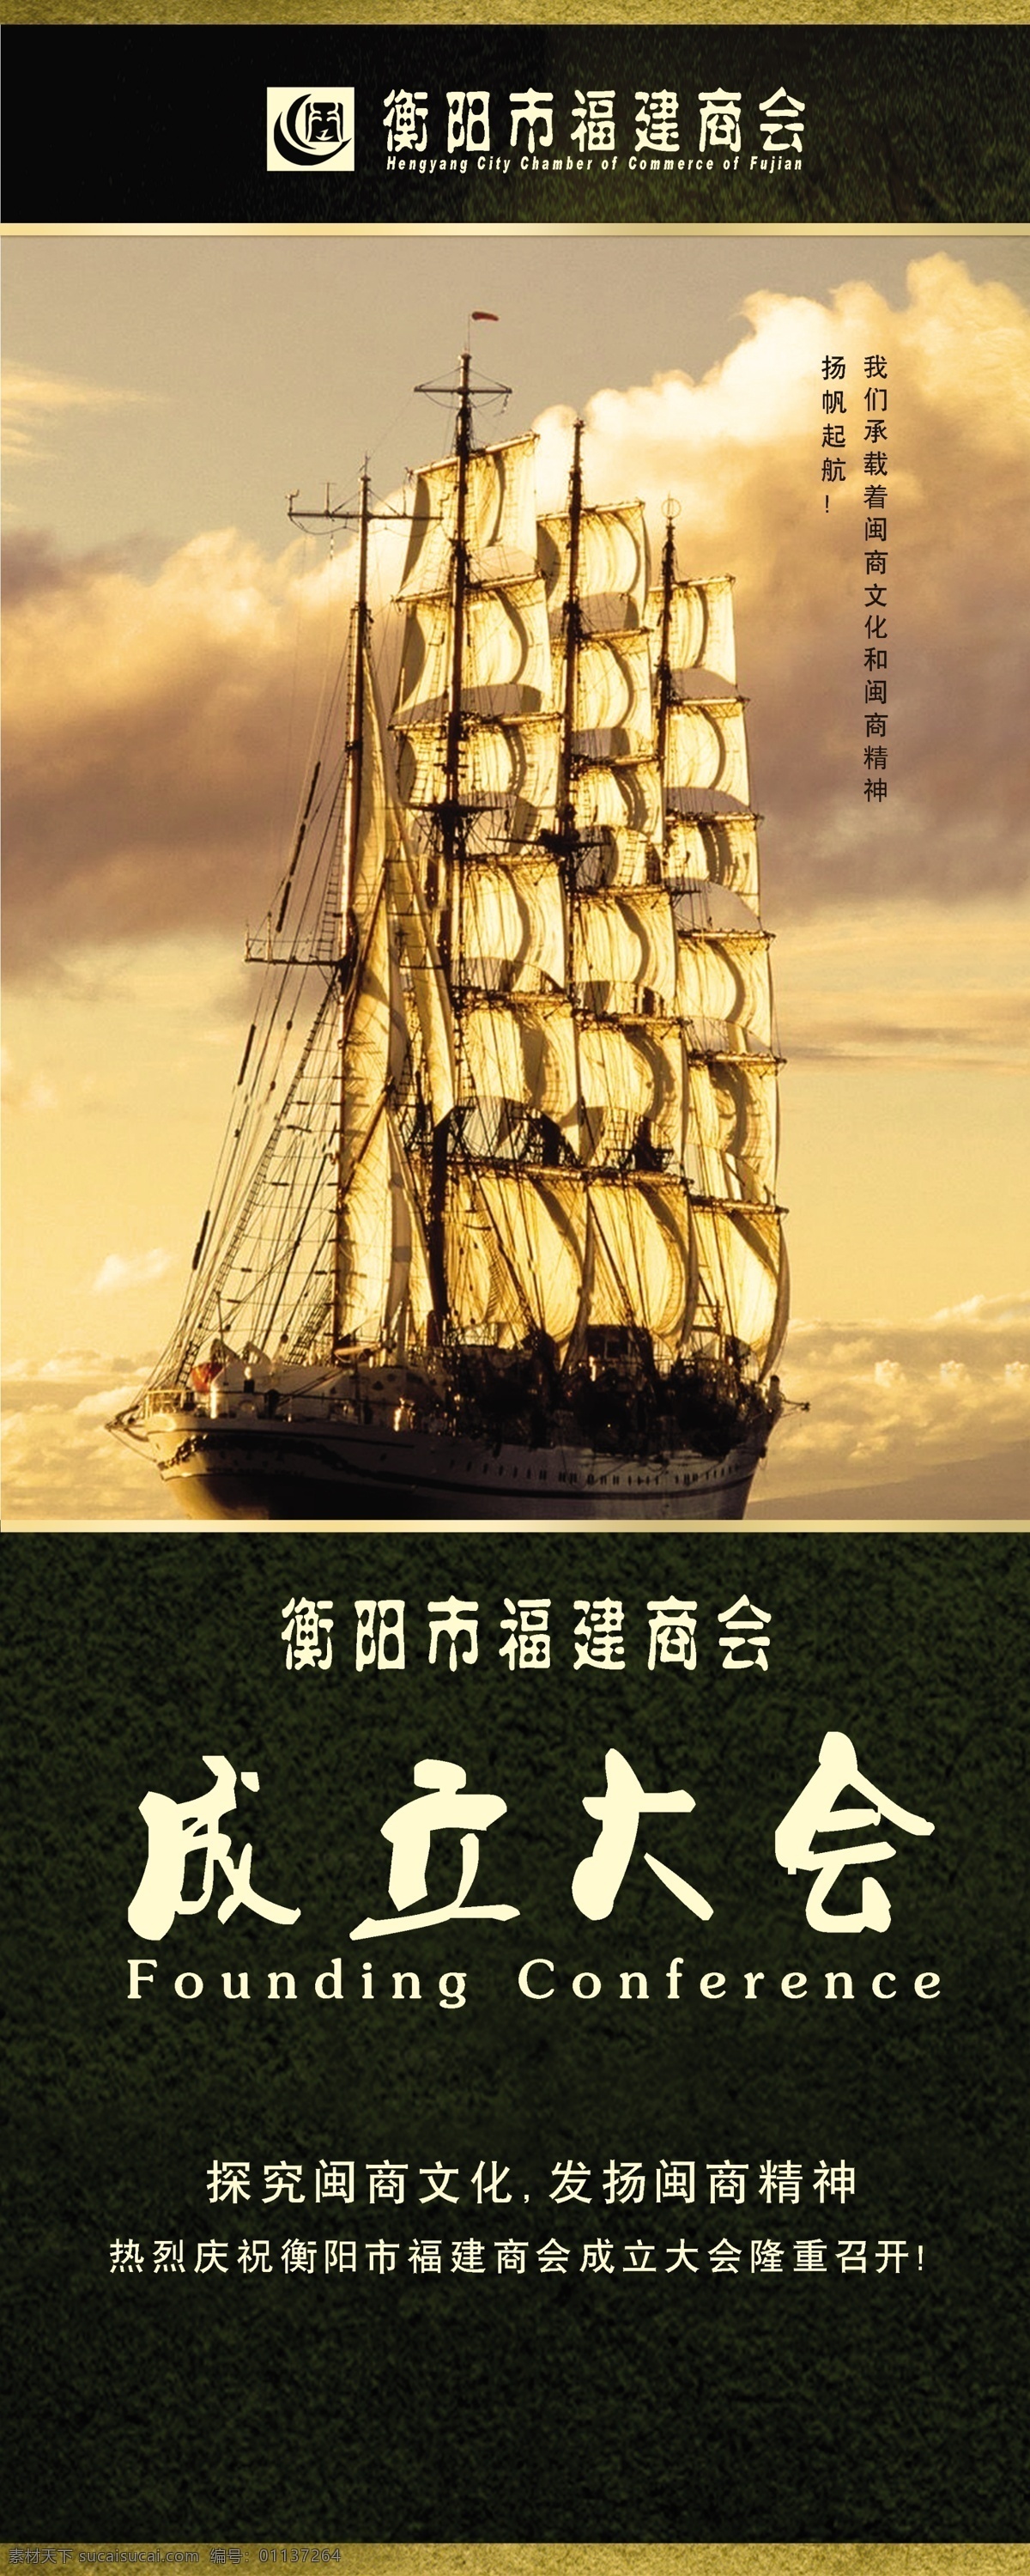 船只 风帆 广告设计模板 源文件 成立 大会 易拉宝 模板下载 成立大会 福建商船 展板 易拉宝设计